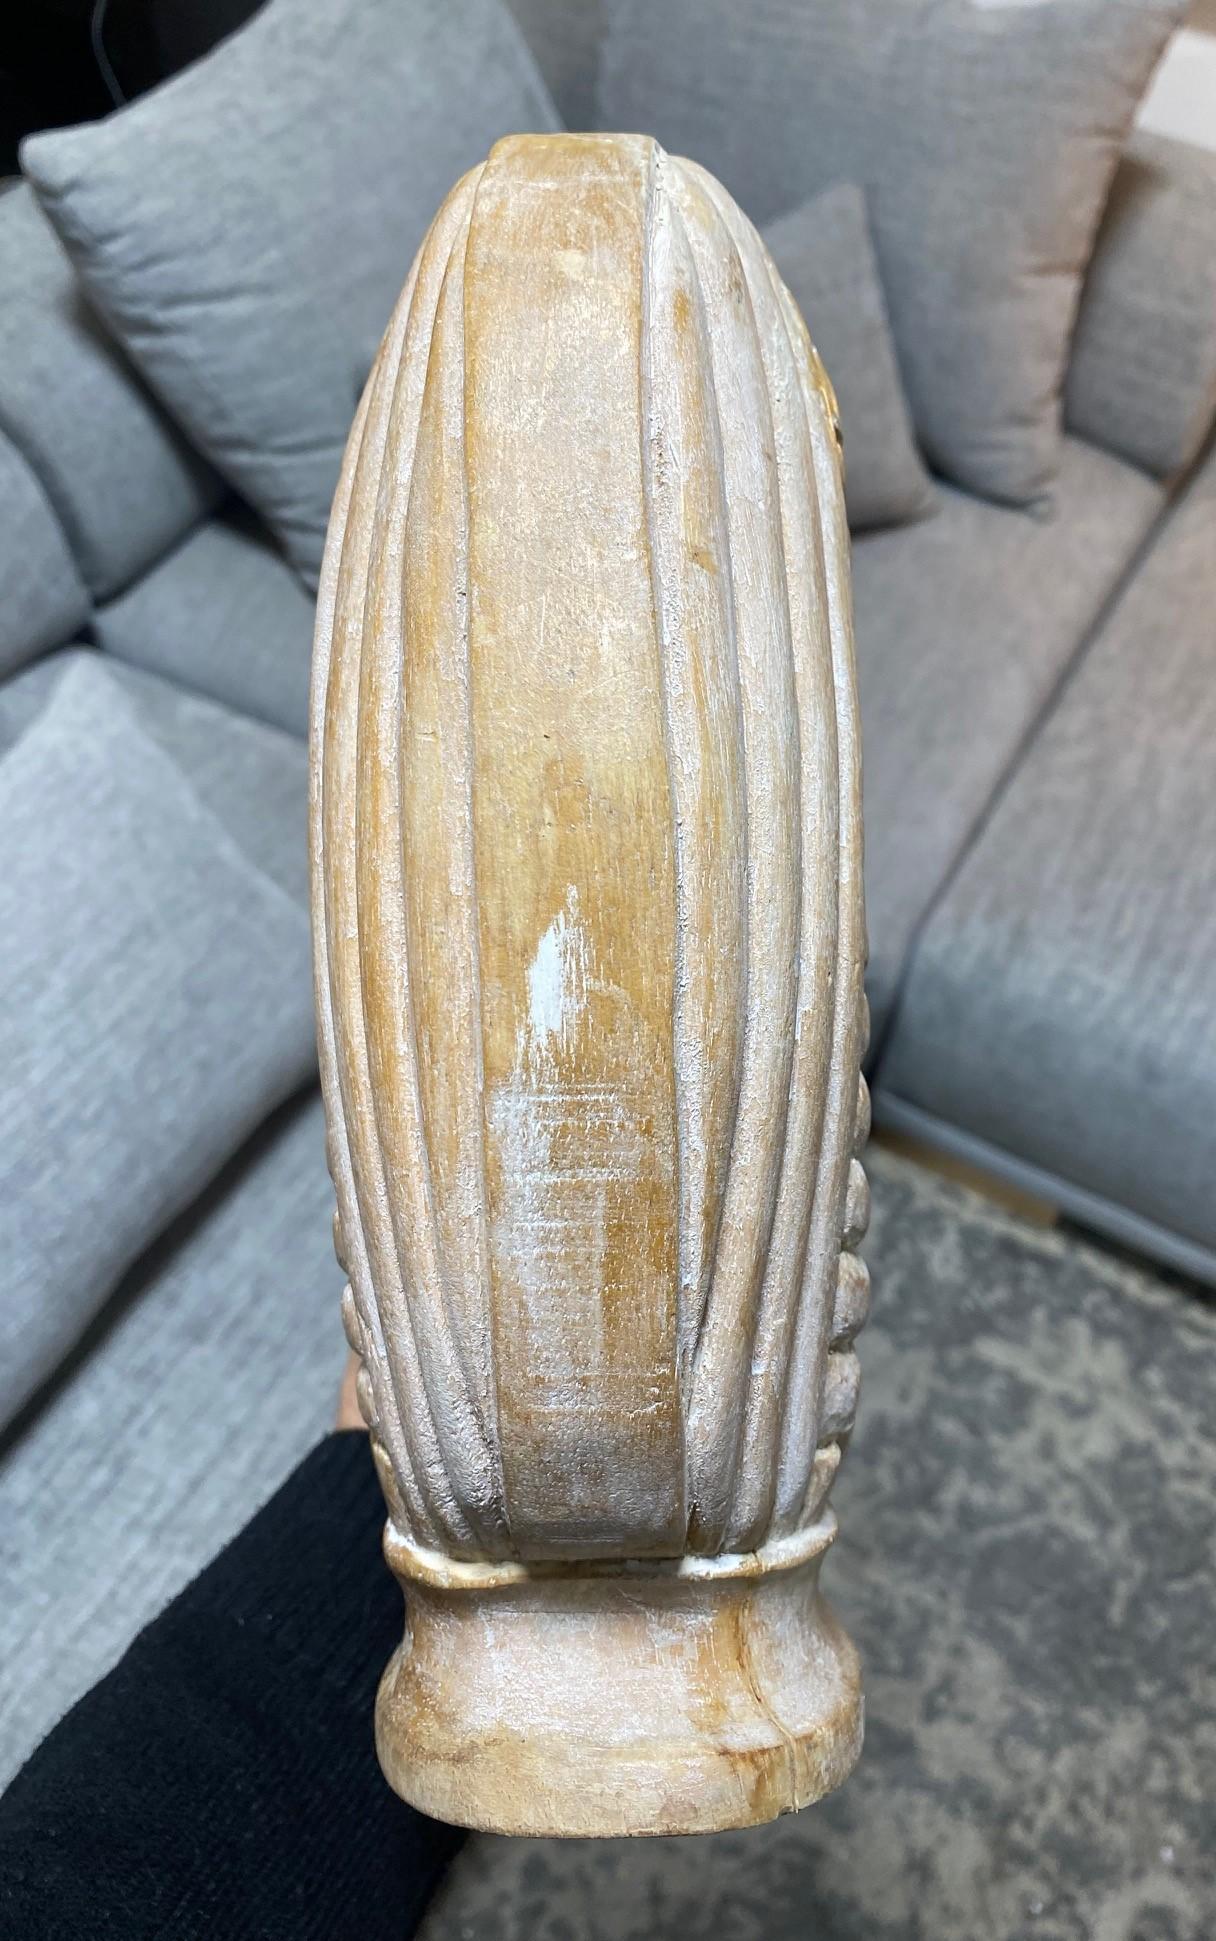 Large Organic Mid-Century Modern Natural Wood Carved Sculptural Art Vase Vessel For Sale 12